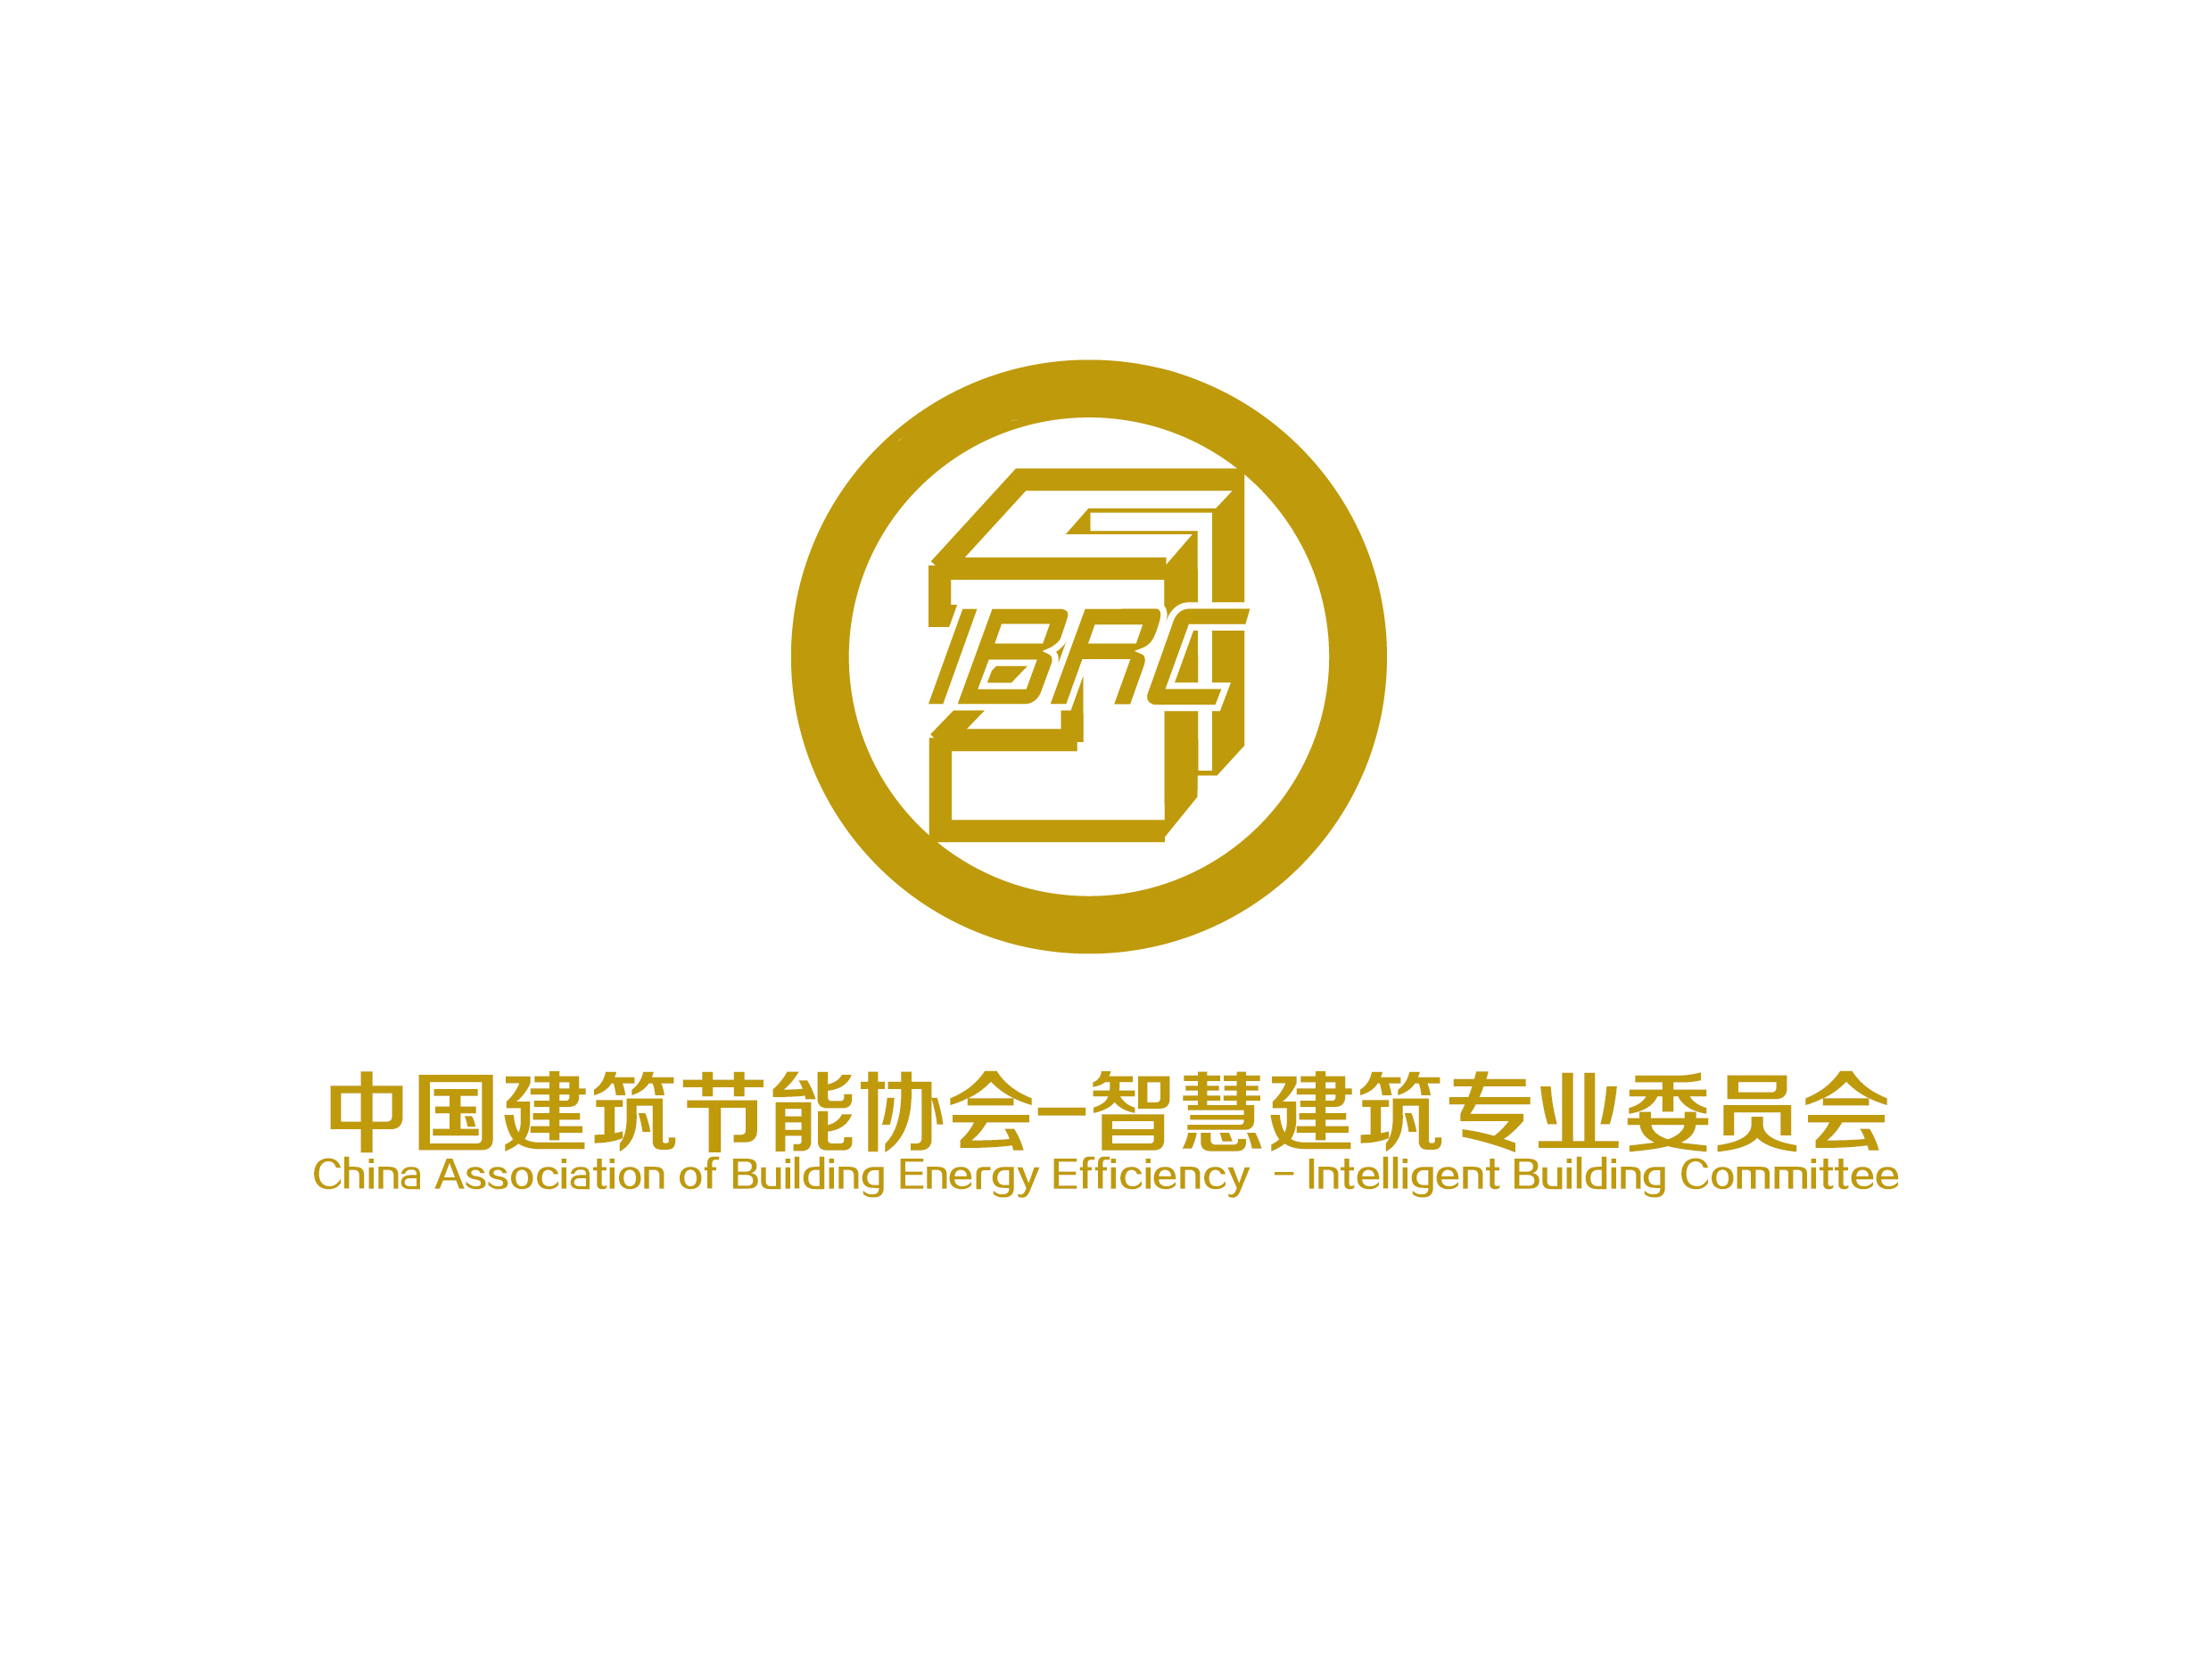 中國建築節能協會智慧建築專業委員會